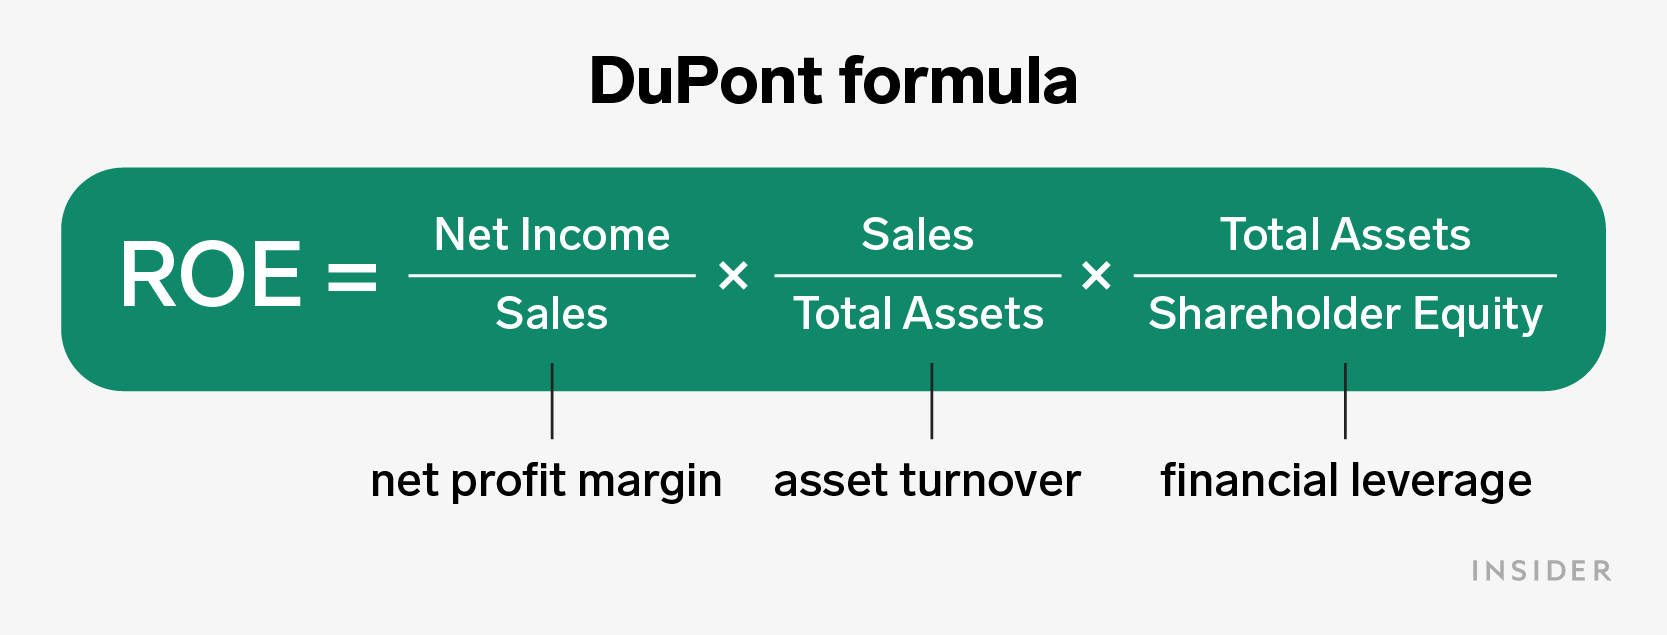 DuPont Formula